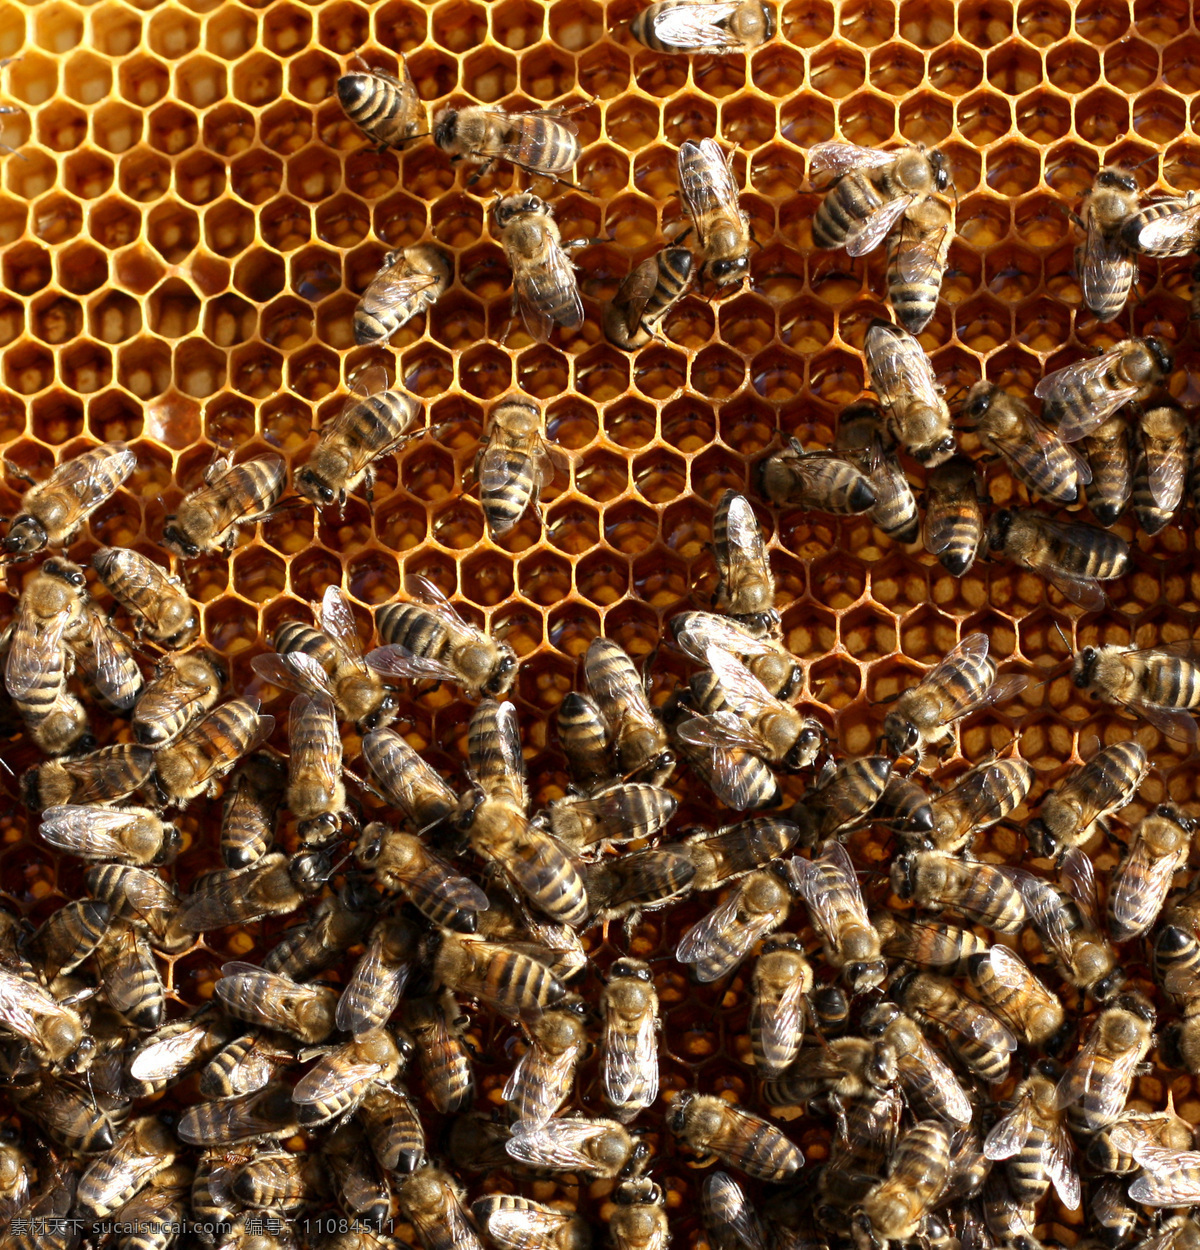 蜂窝 上 忙碌 蜜蜂 蜂蜜 蜂巢 补品 昆虫世界 生物世界